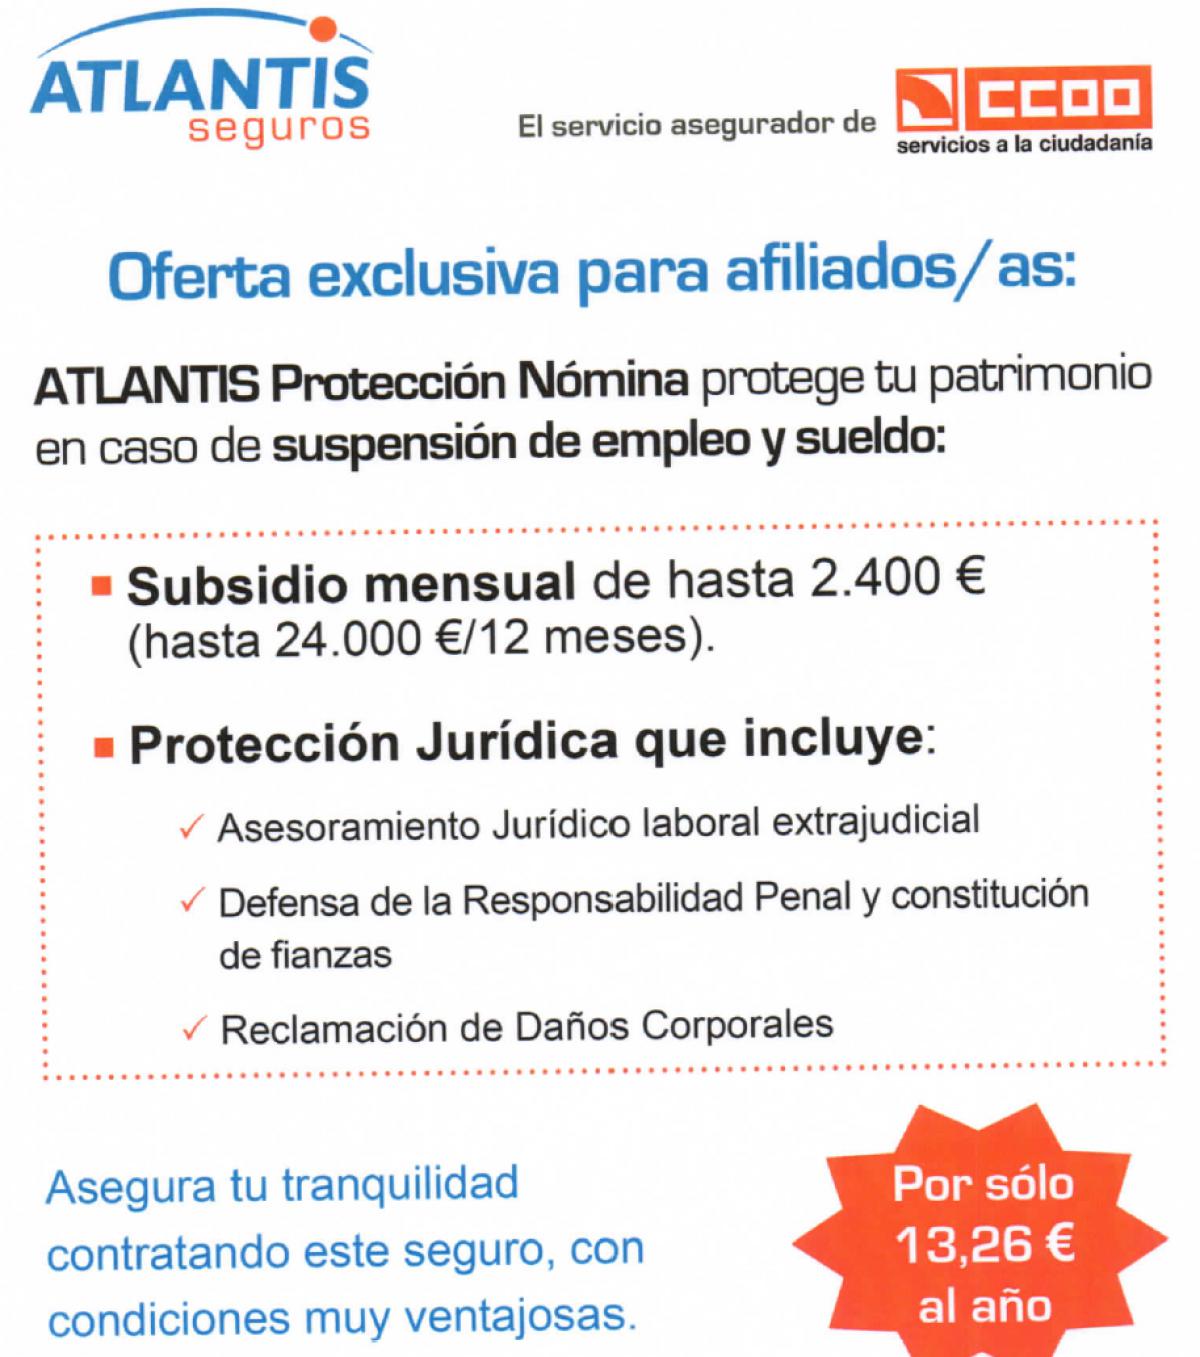 Campaña Atlantis protección de nómina en caso de suspensión de empleo y sueldo